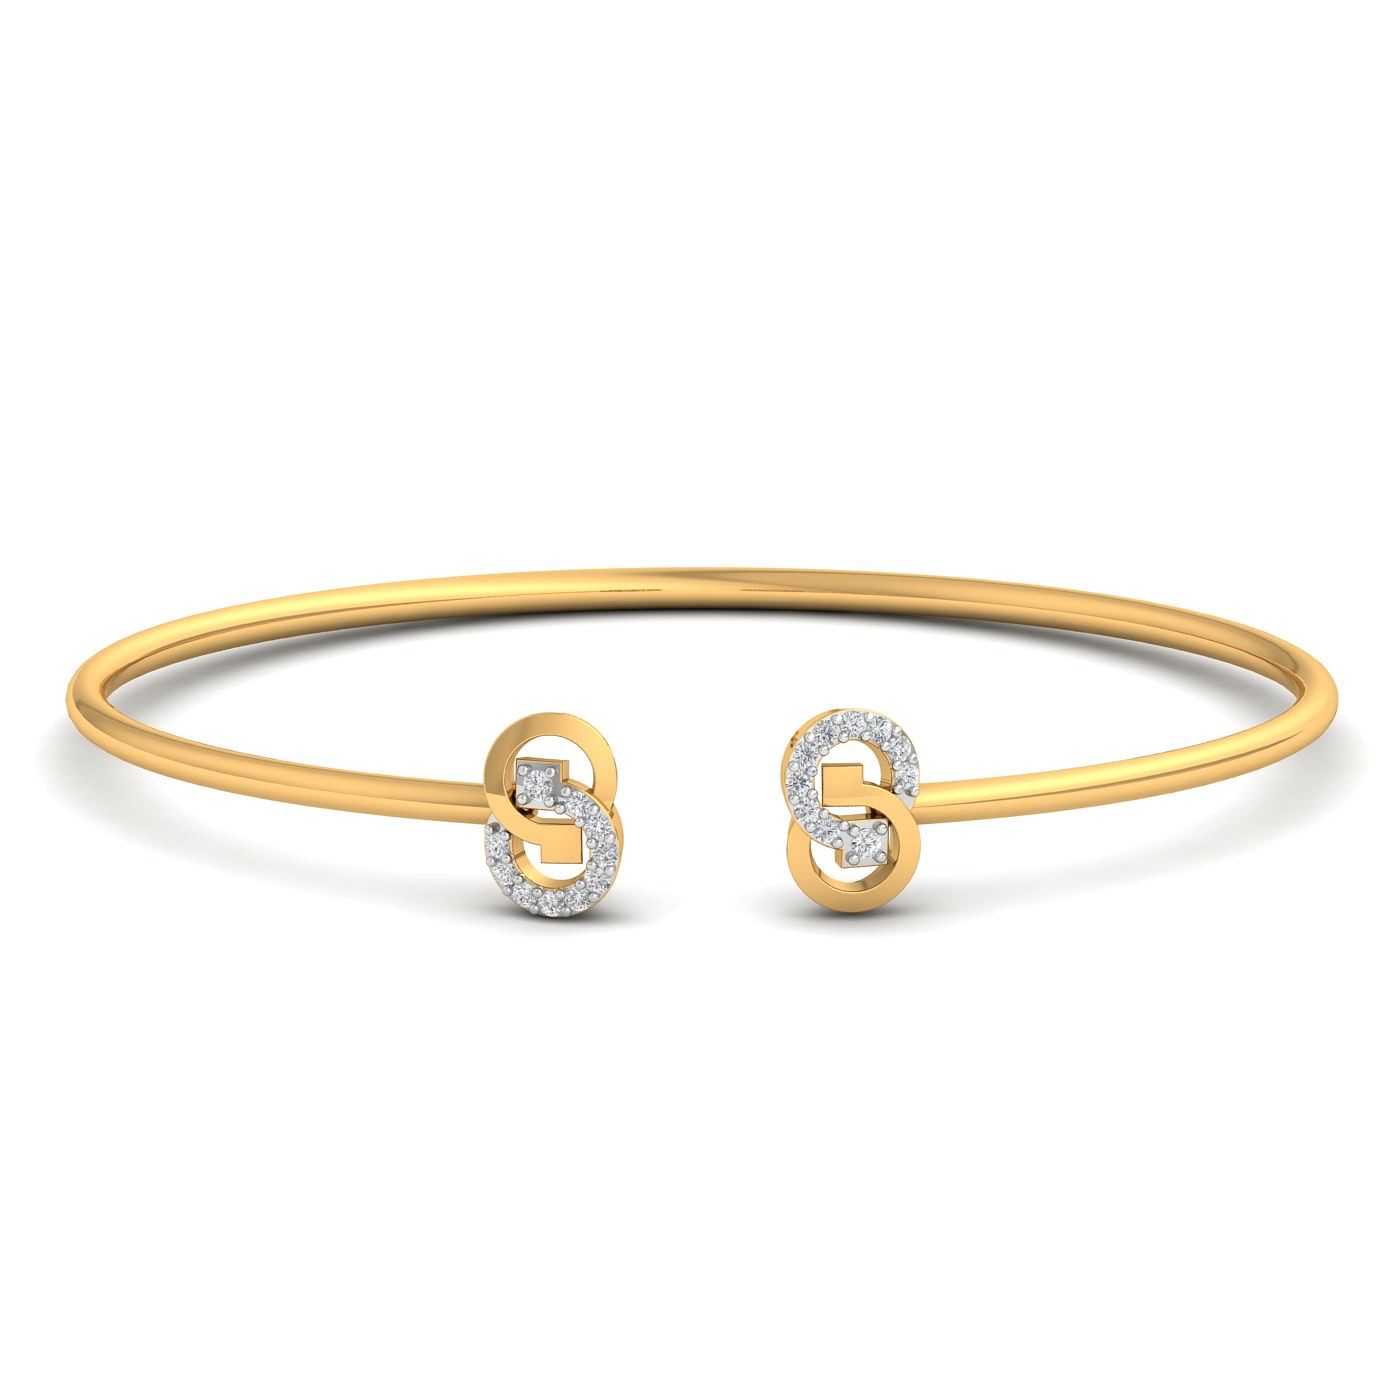 Jacqueline Diamond Yellow Gold Bracelet Gift For Women